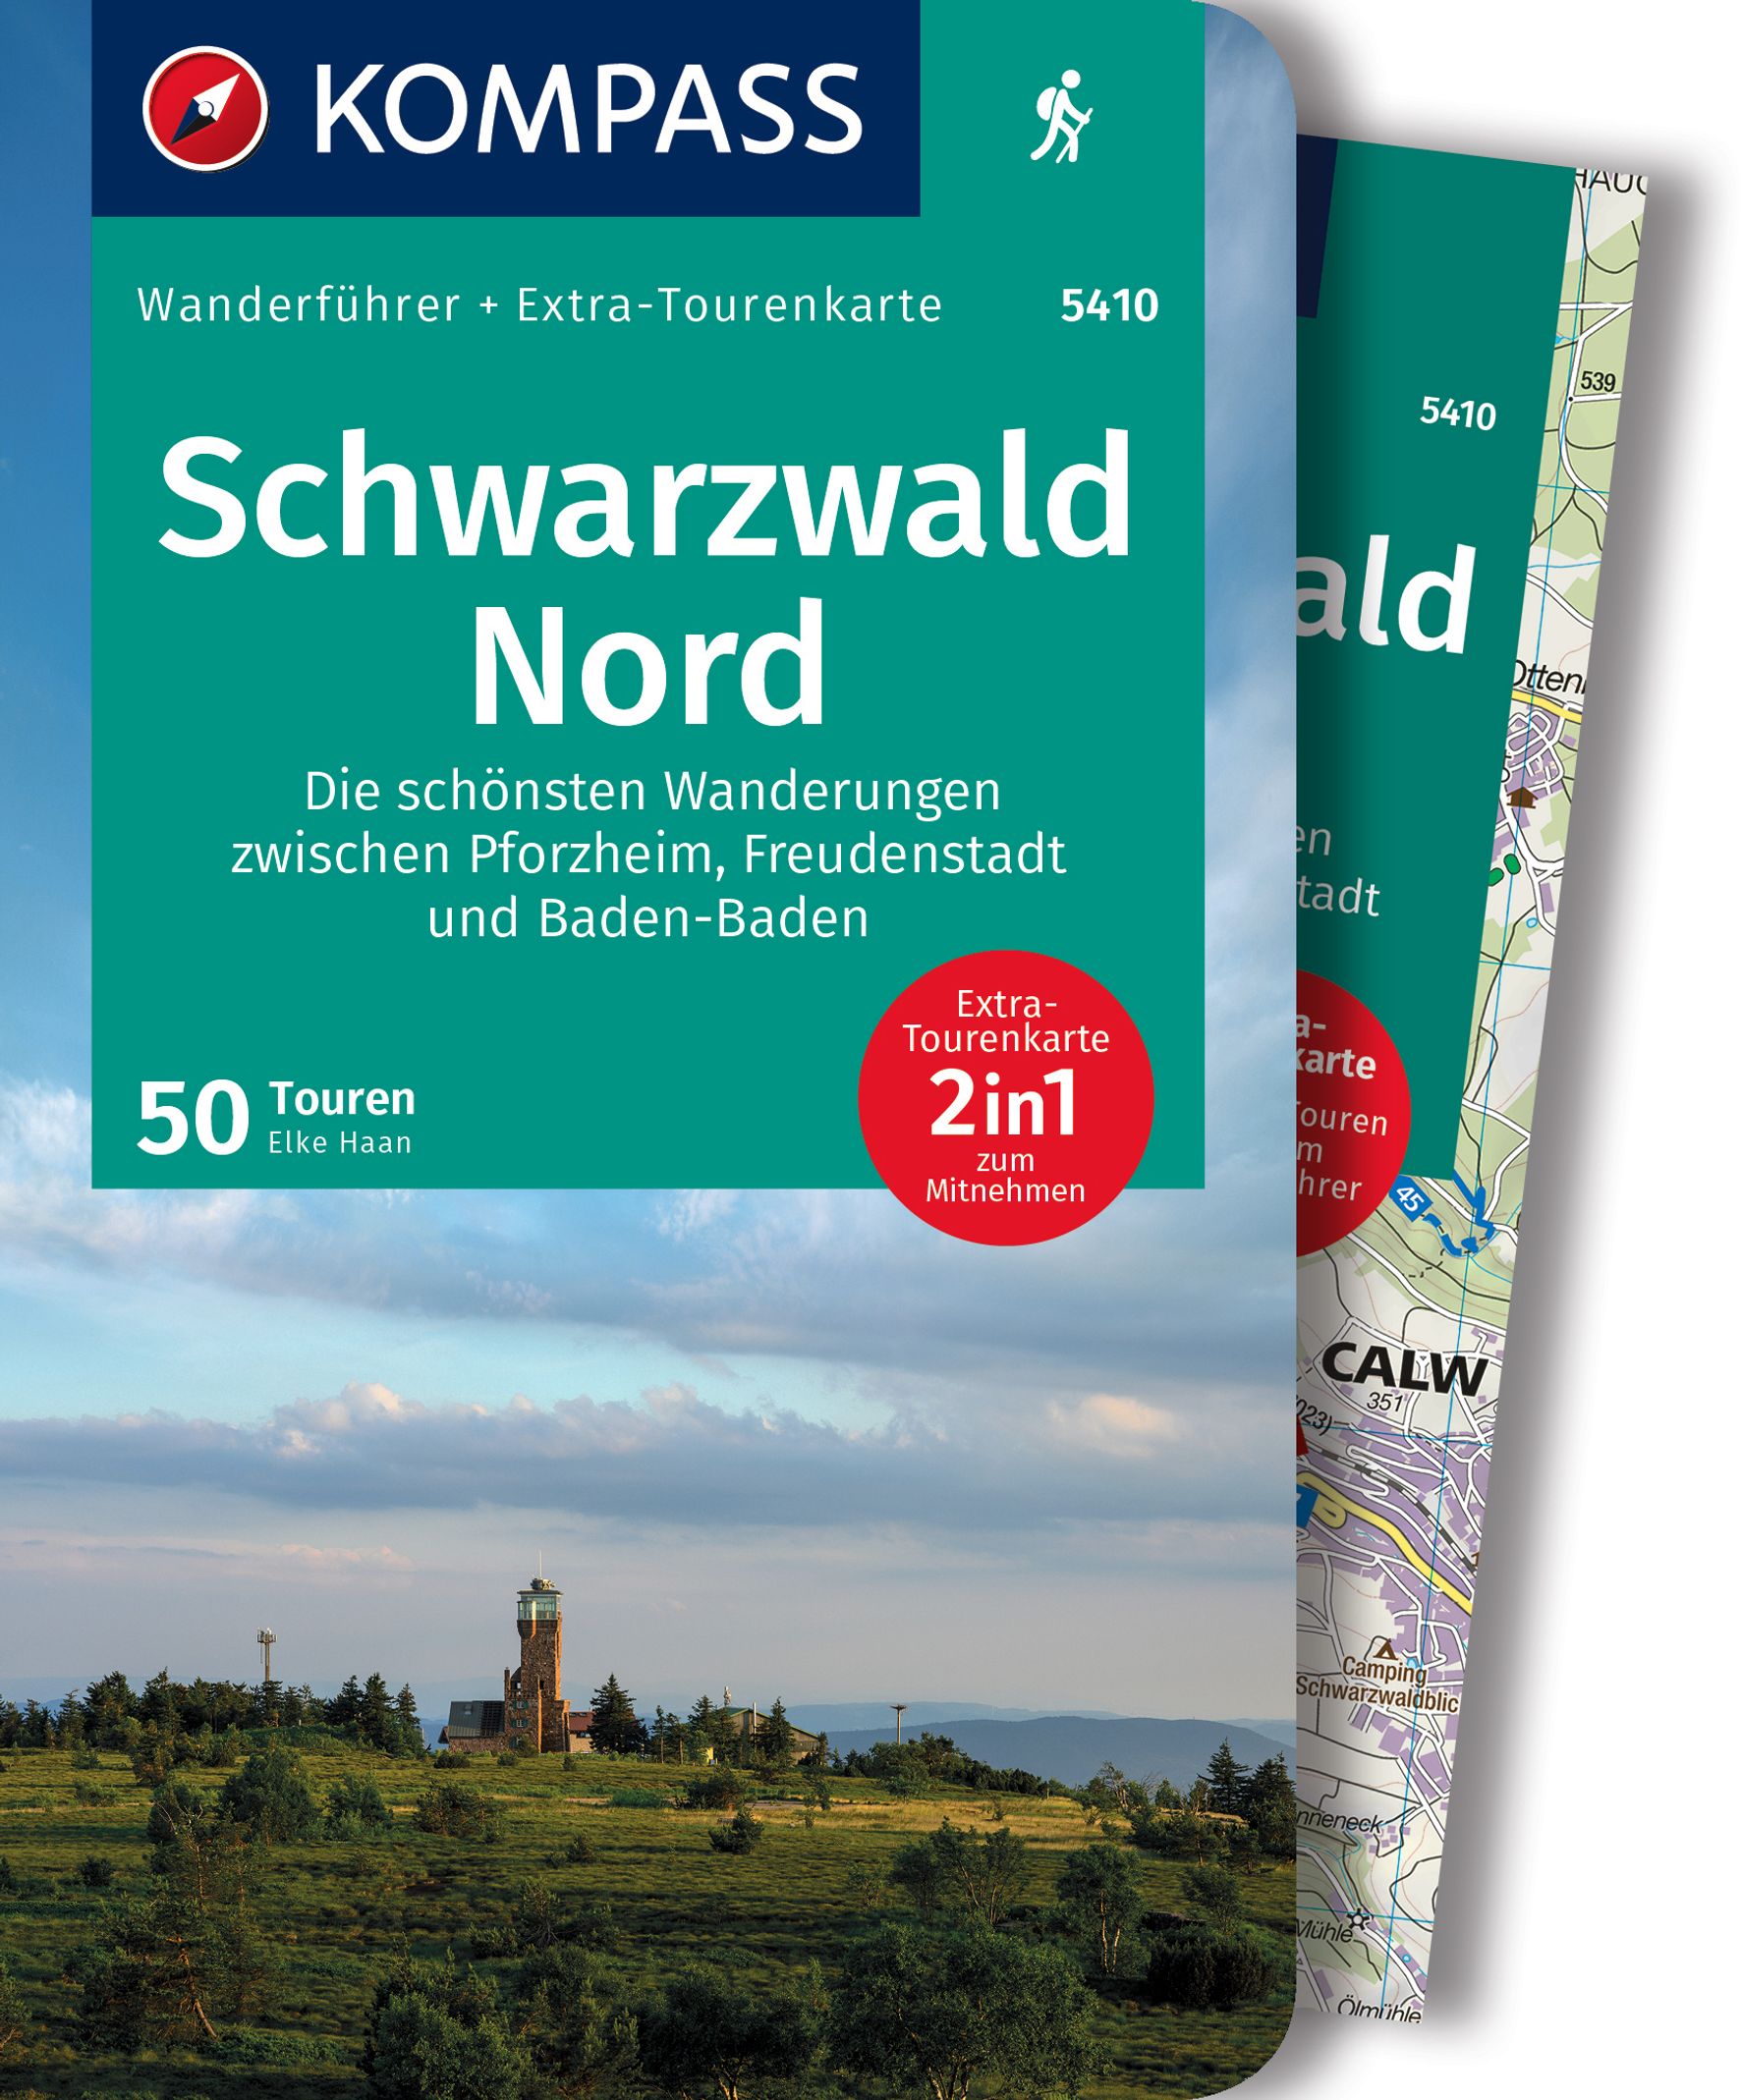 MAIRDUMONT Schwarzwald Nord, Die schönsten Wanderungen zwischen Pforzheim, Freudenstadt und Baden-Baden, 50 Touren mit Extra-Tourenkarte